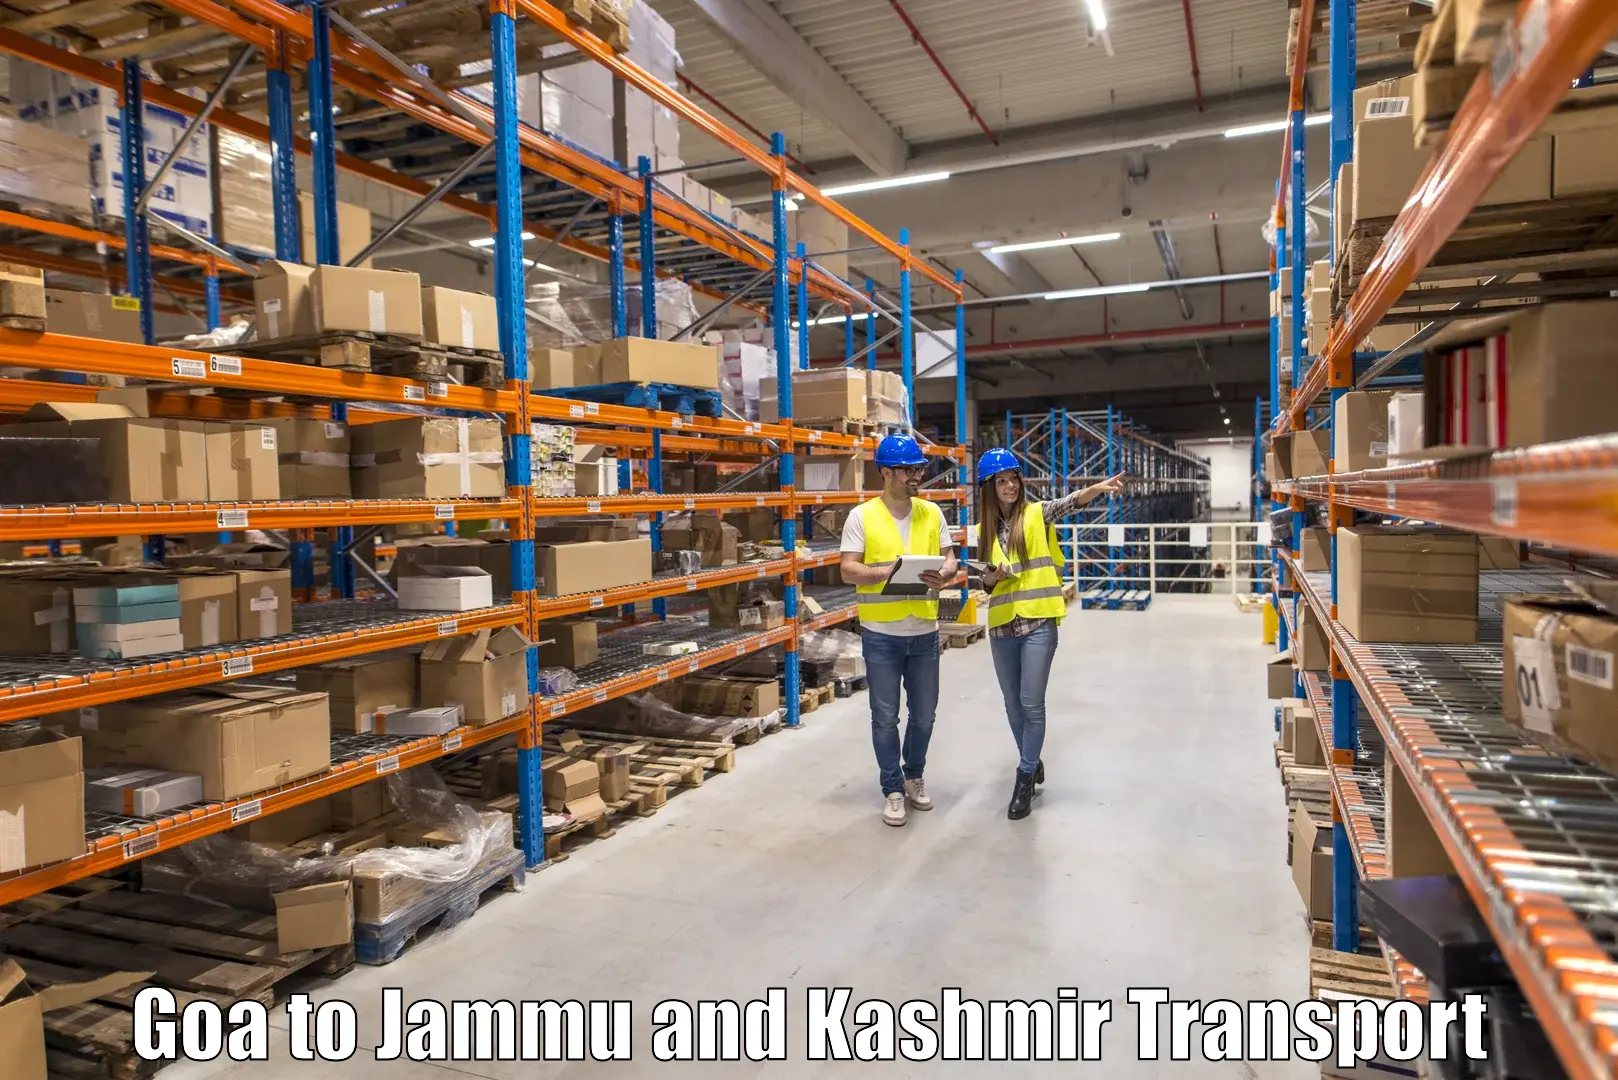 Shipping services Goa to Srinagar Kashmir